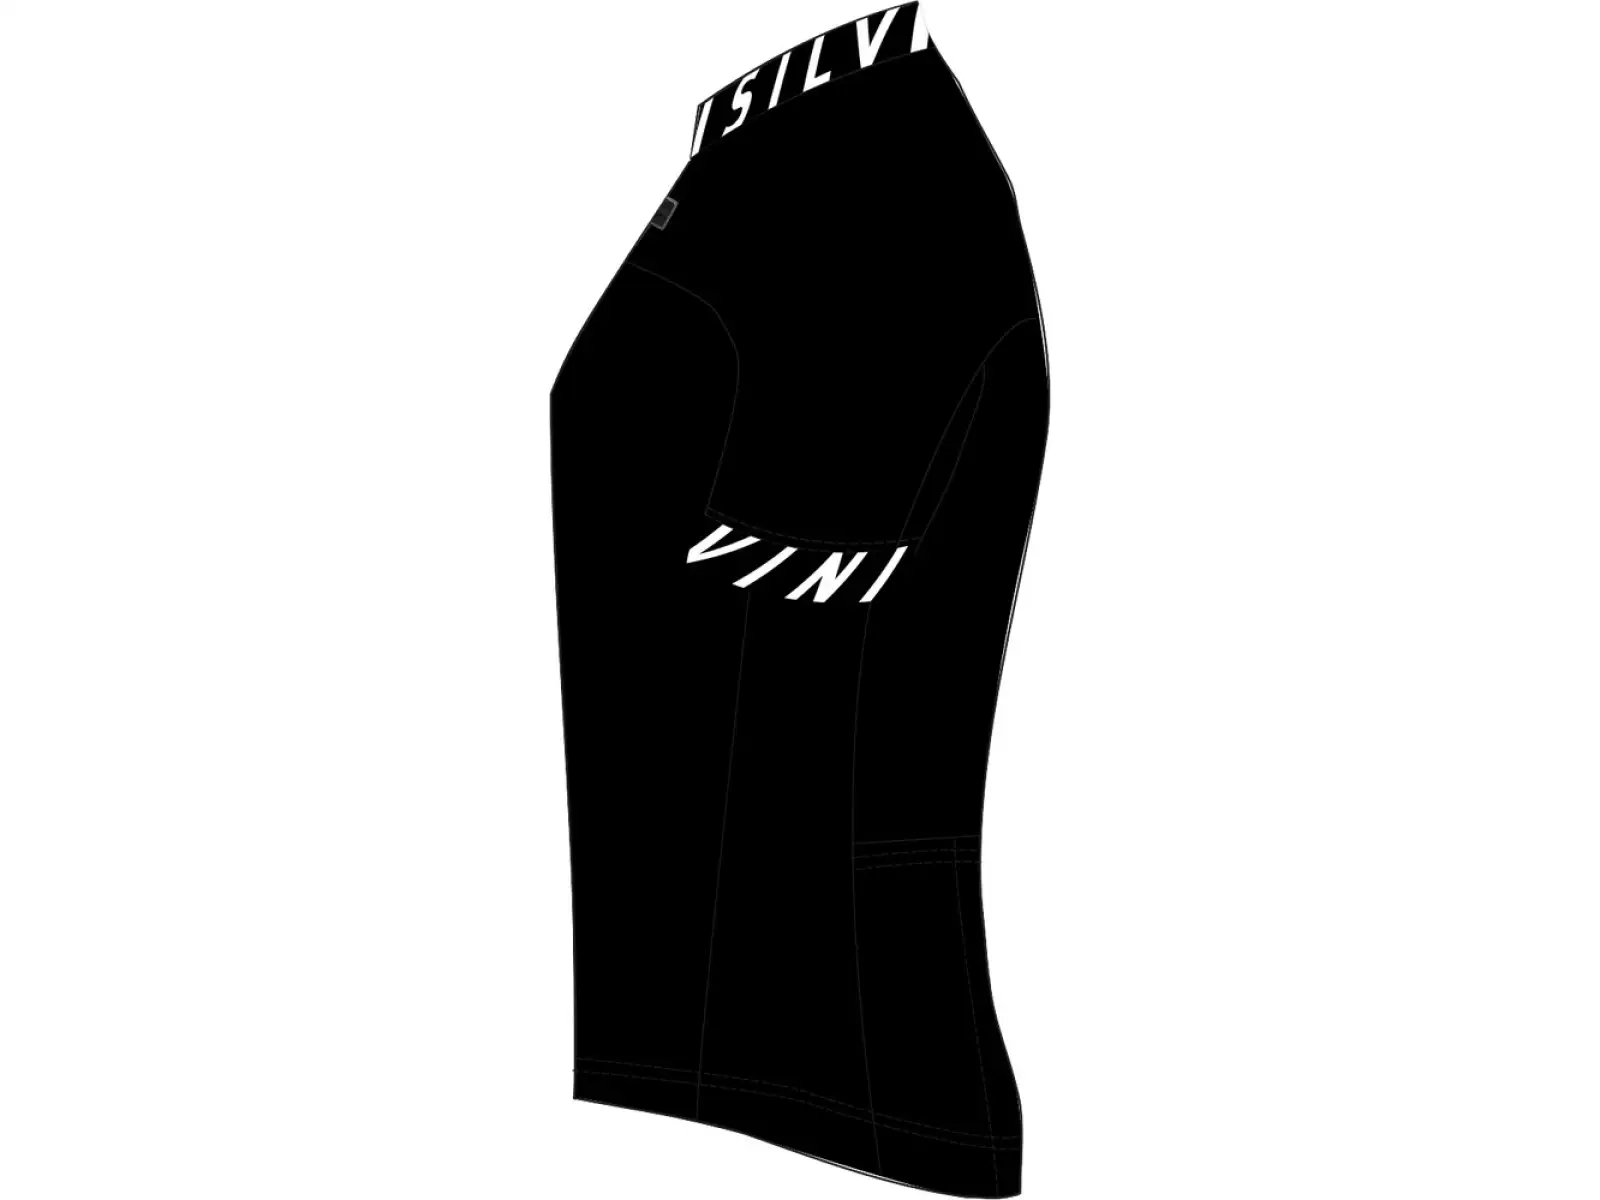 Silvini Stelvio pánsky dres s krátkym rukávom black/white